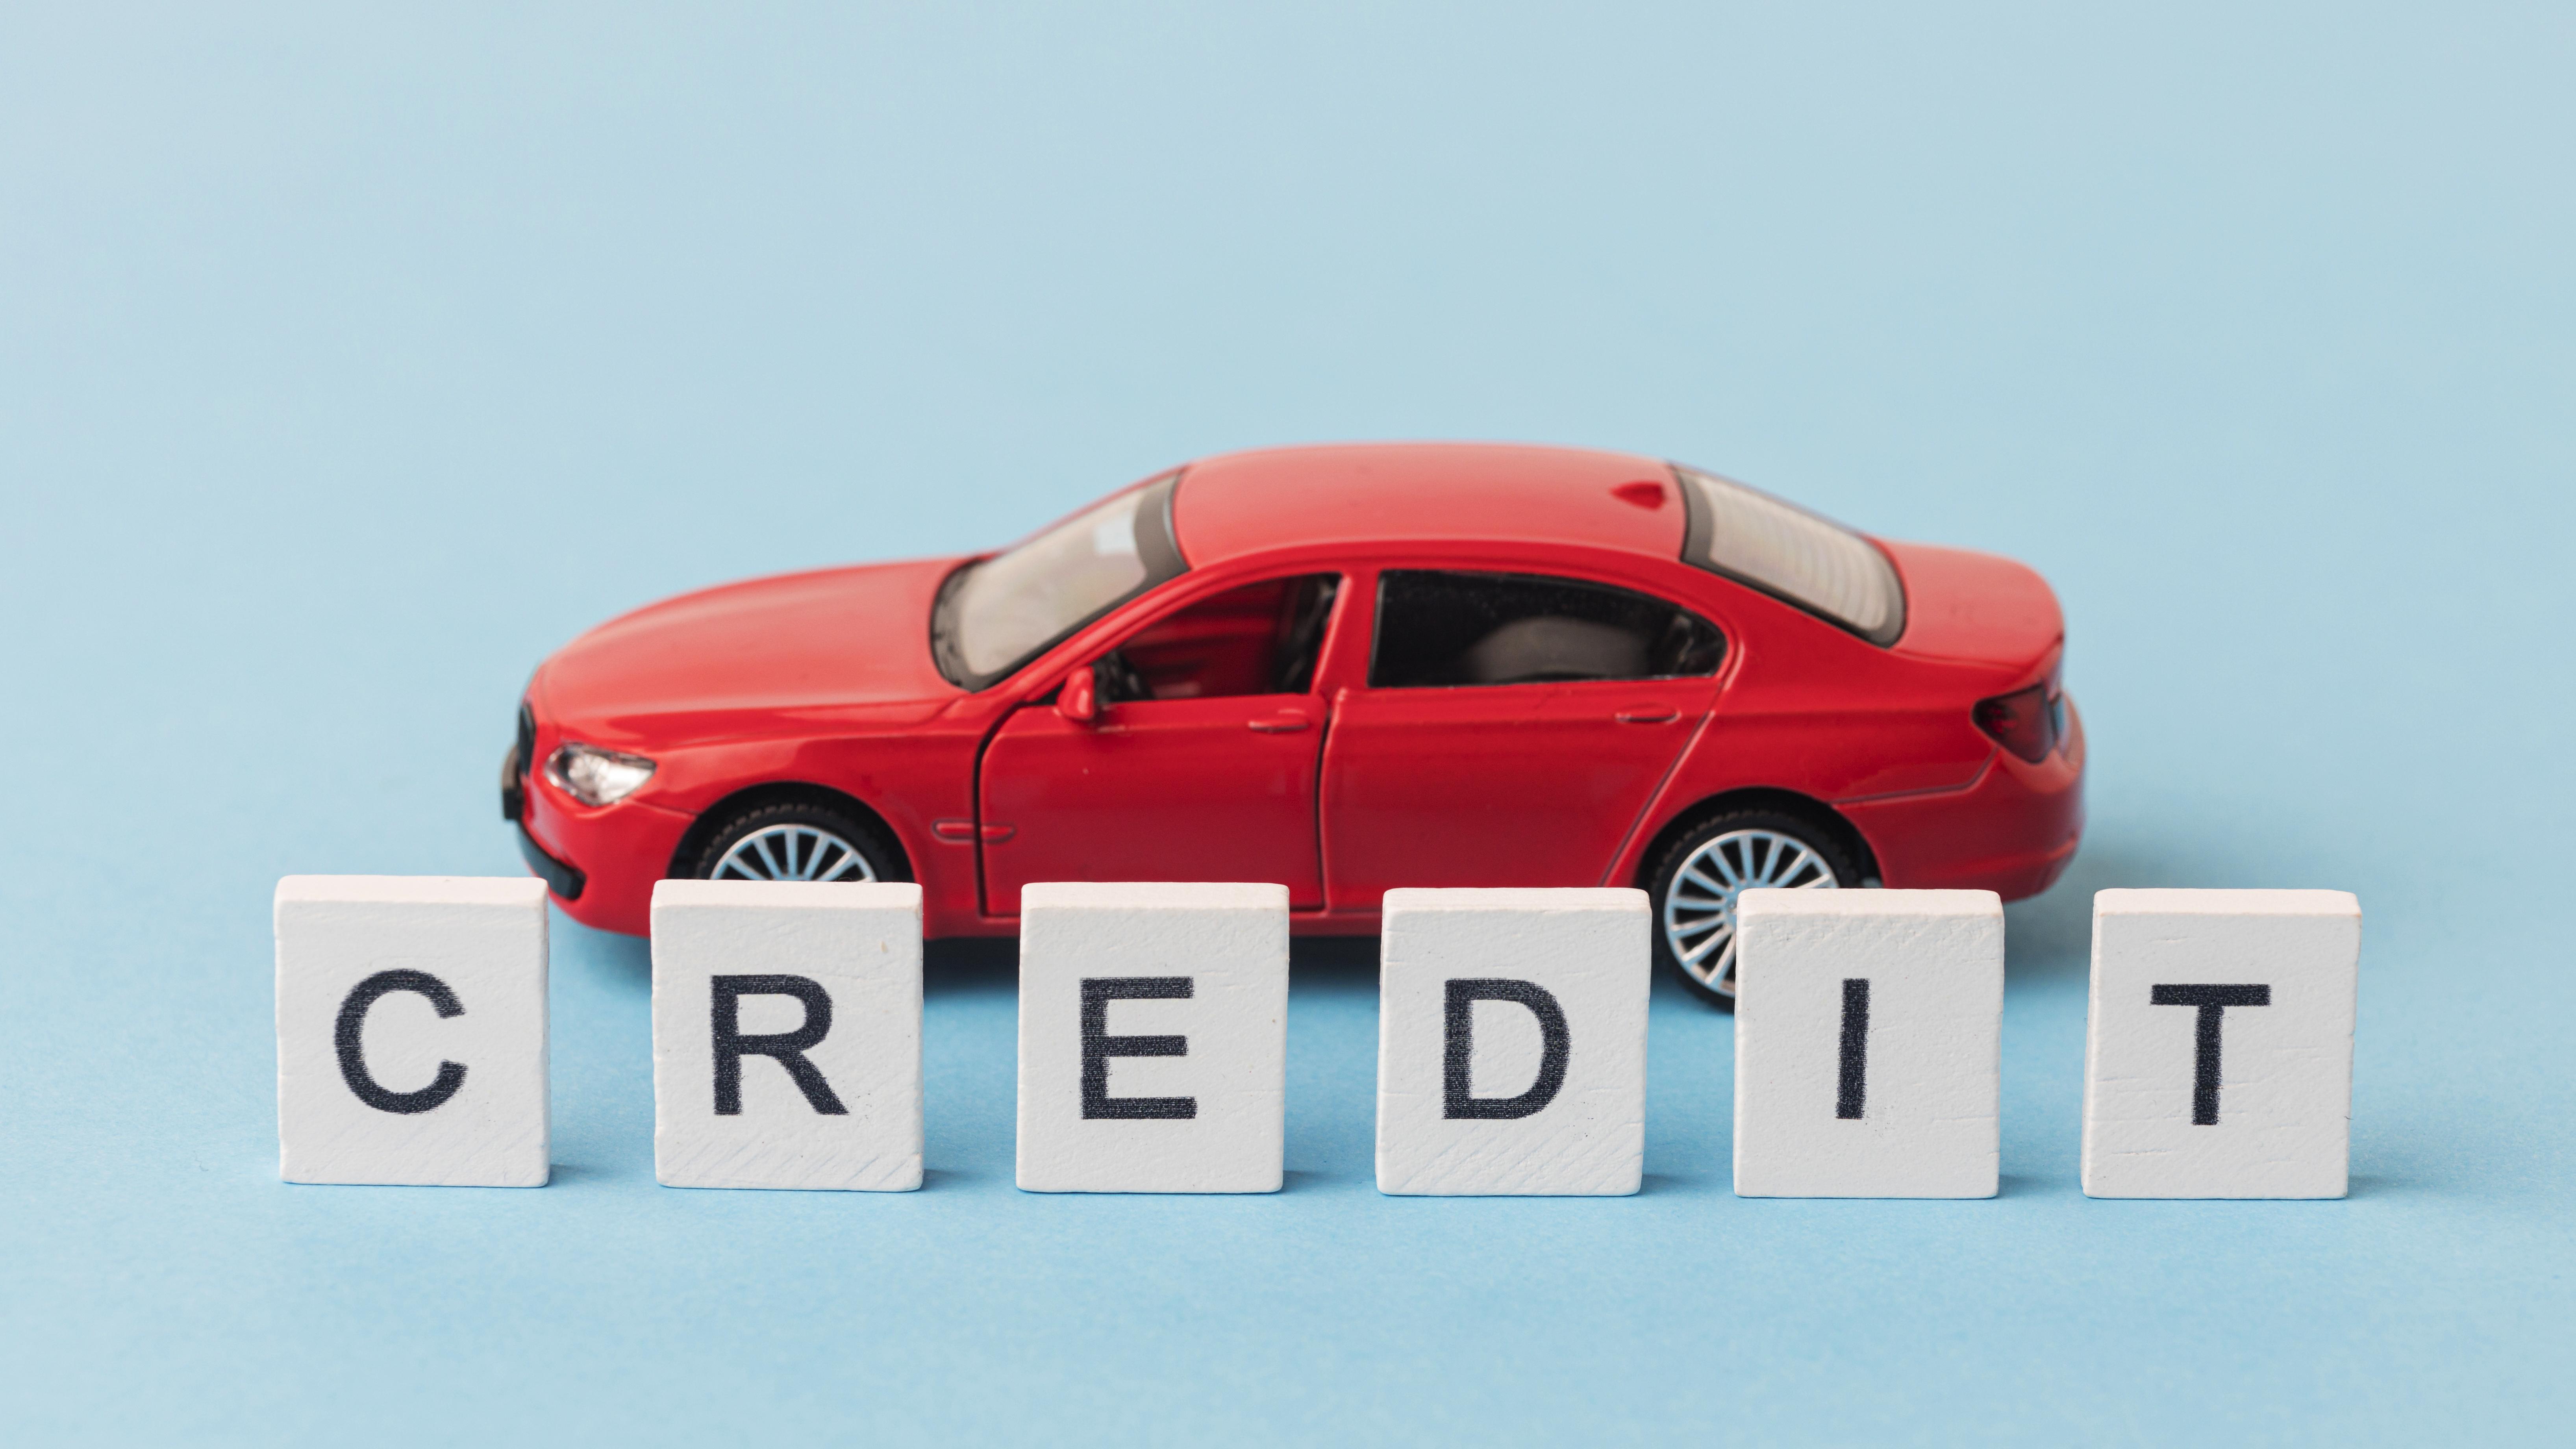 voiture rouge et lettres scrabble "credit"